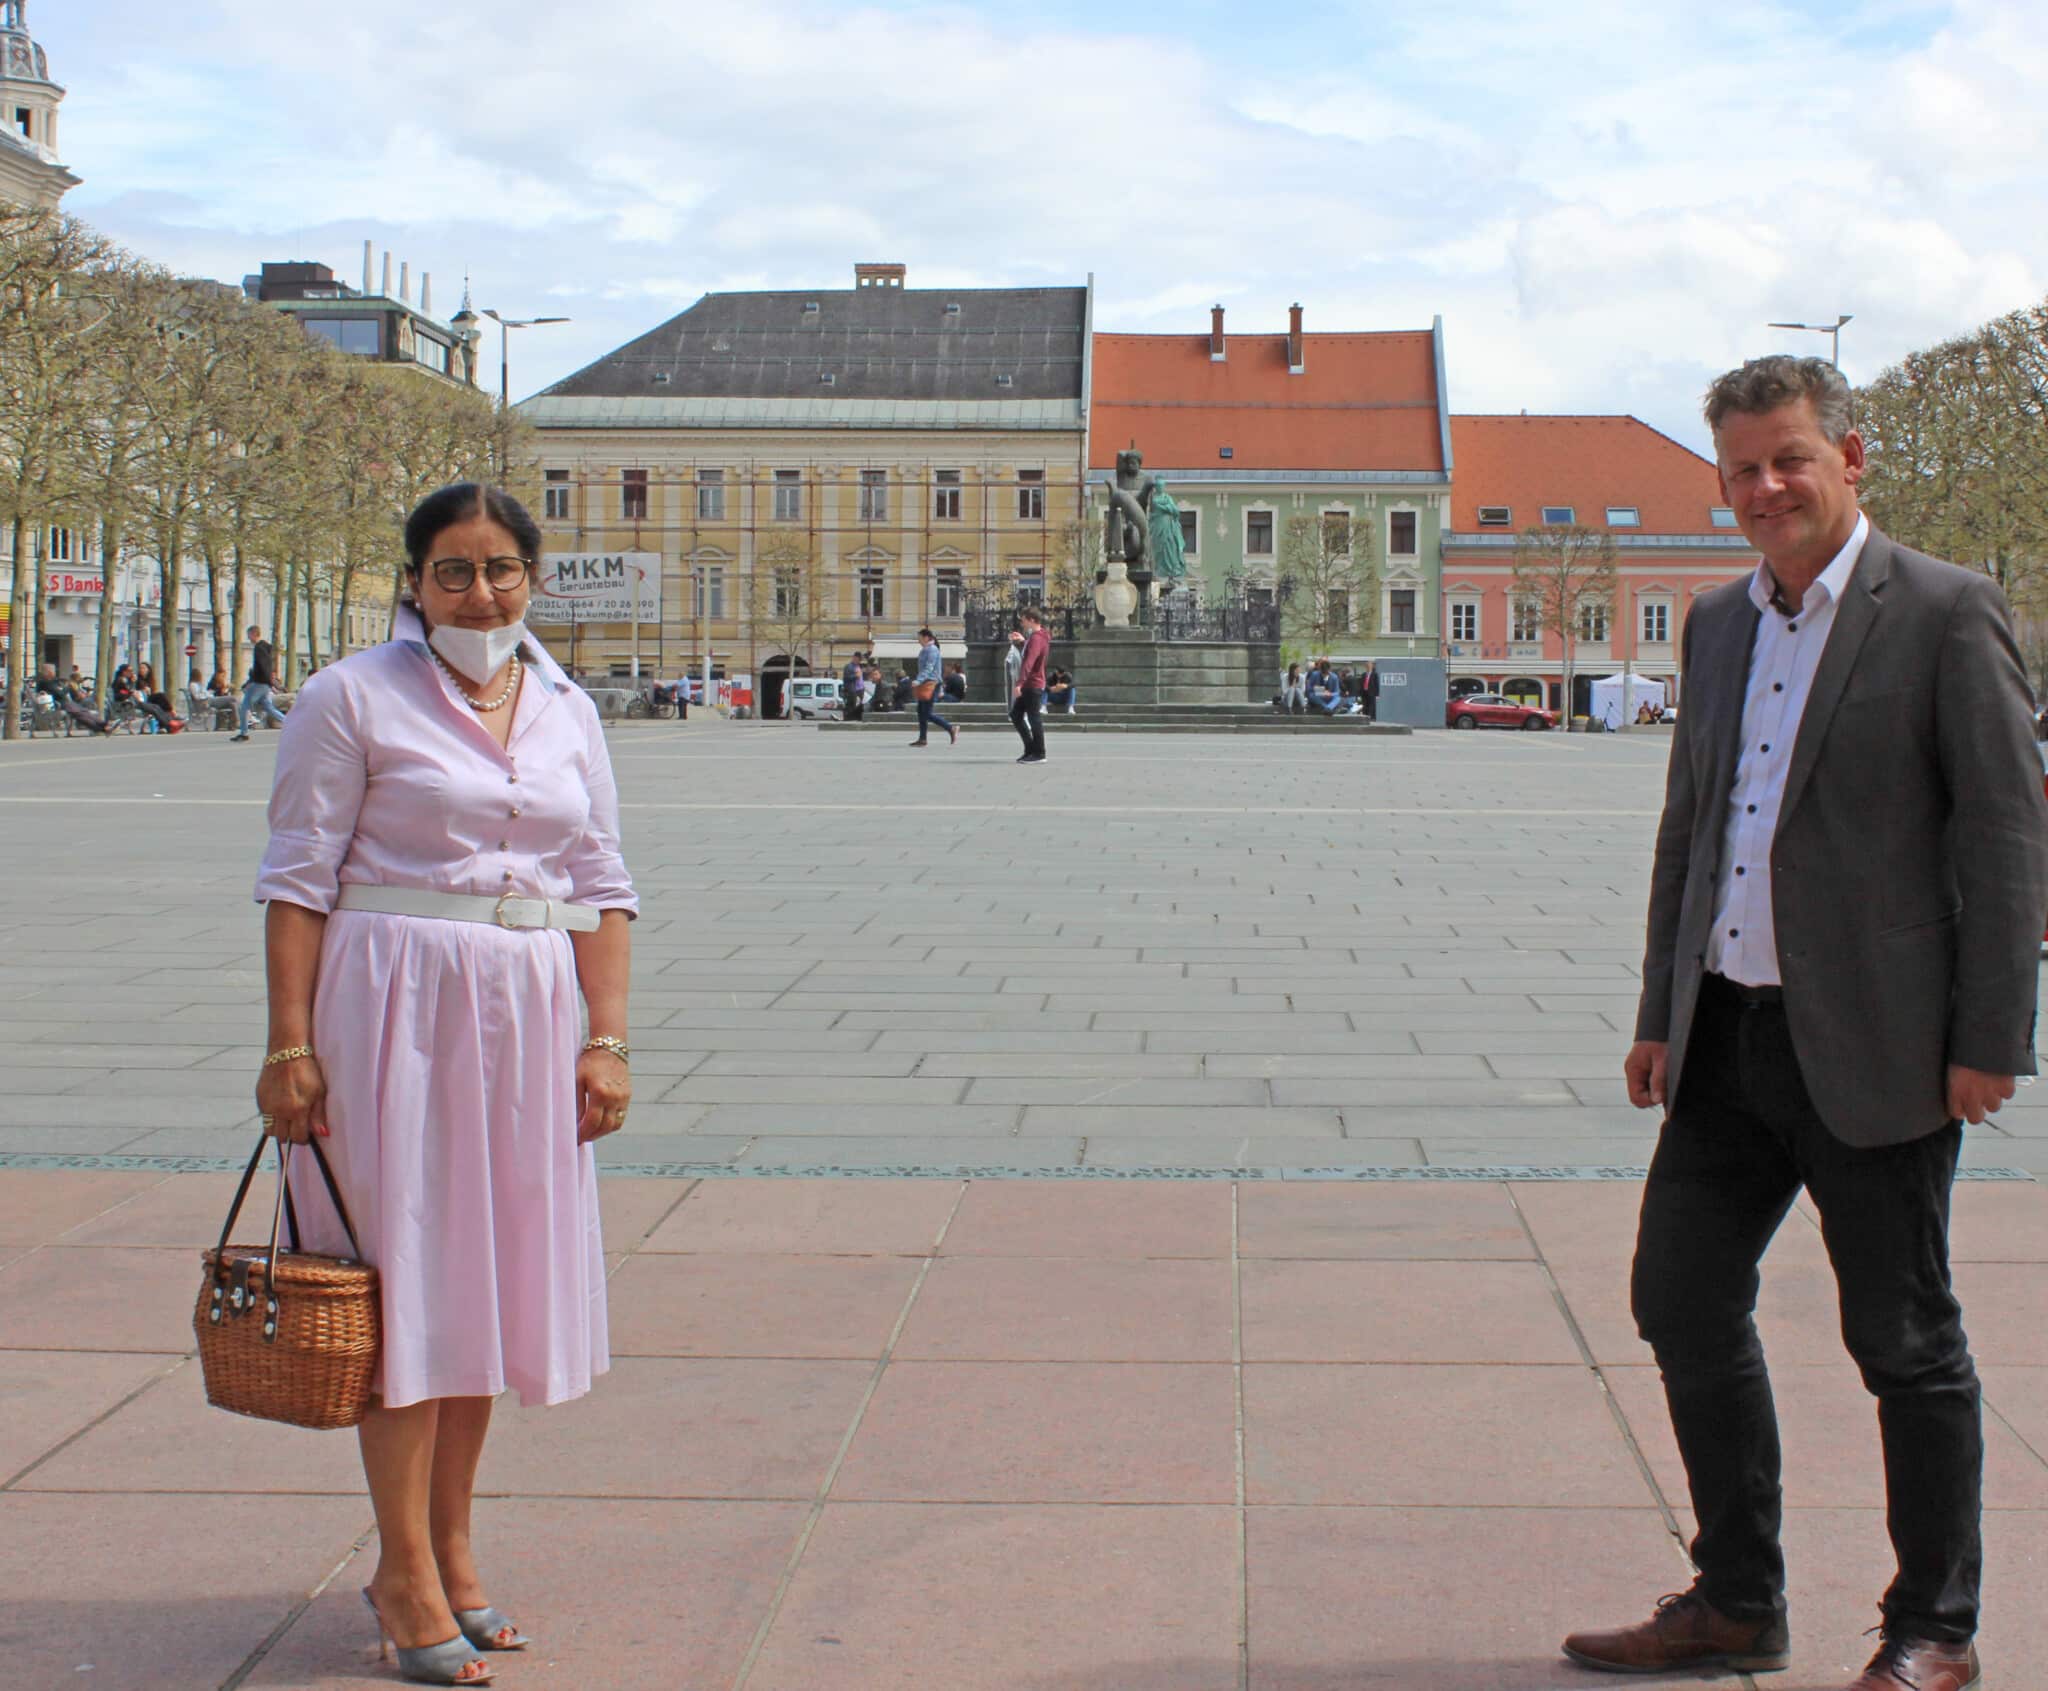 Bürgermeister Christian Scheider mit Edith Haslinger (Vertreterin der Wirtschaftskammer für Markt-, Straßen- und Wanderhandel)

